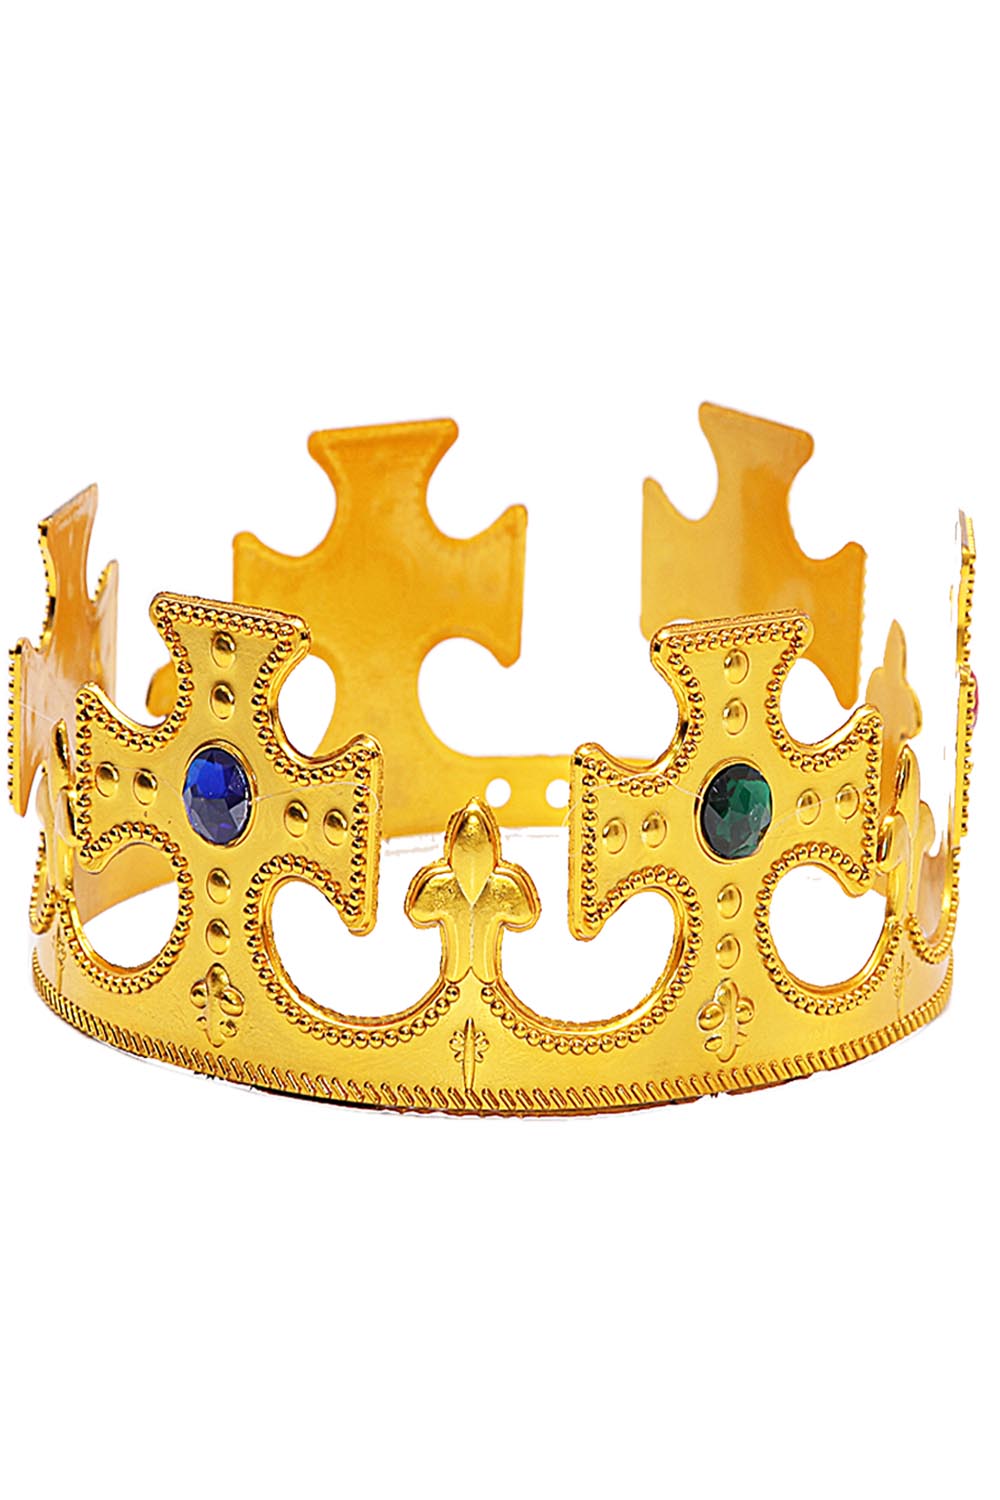 Corona imperatore oro